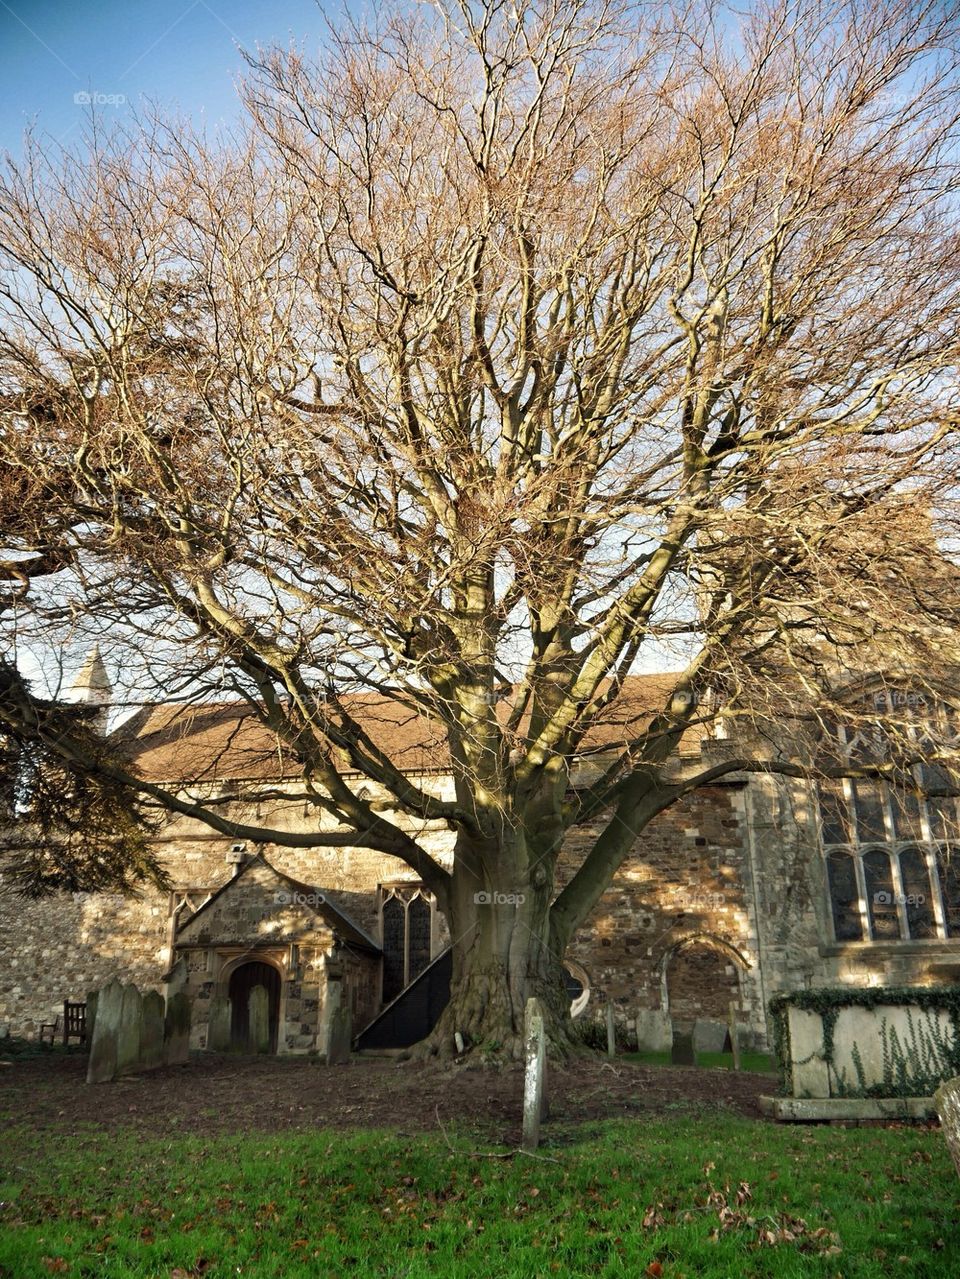 Tree in churchyard